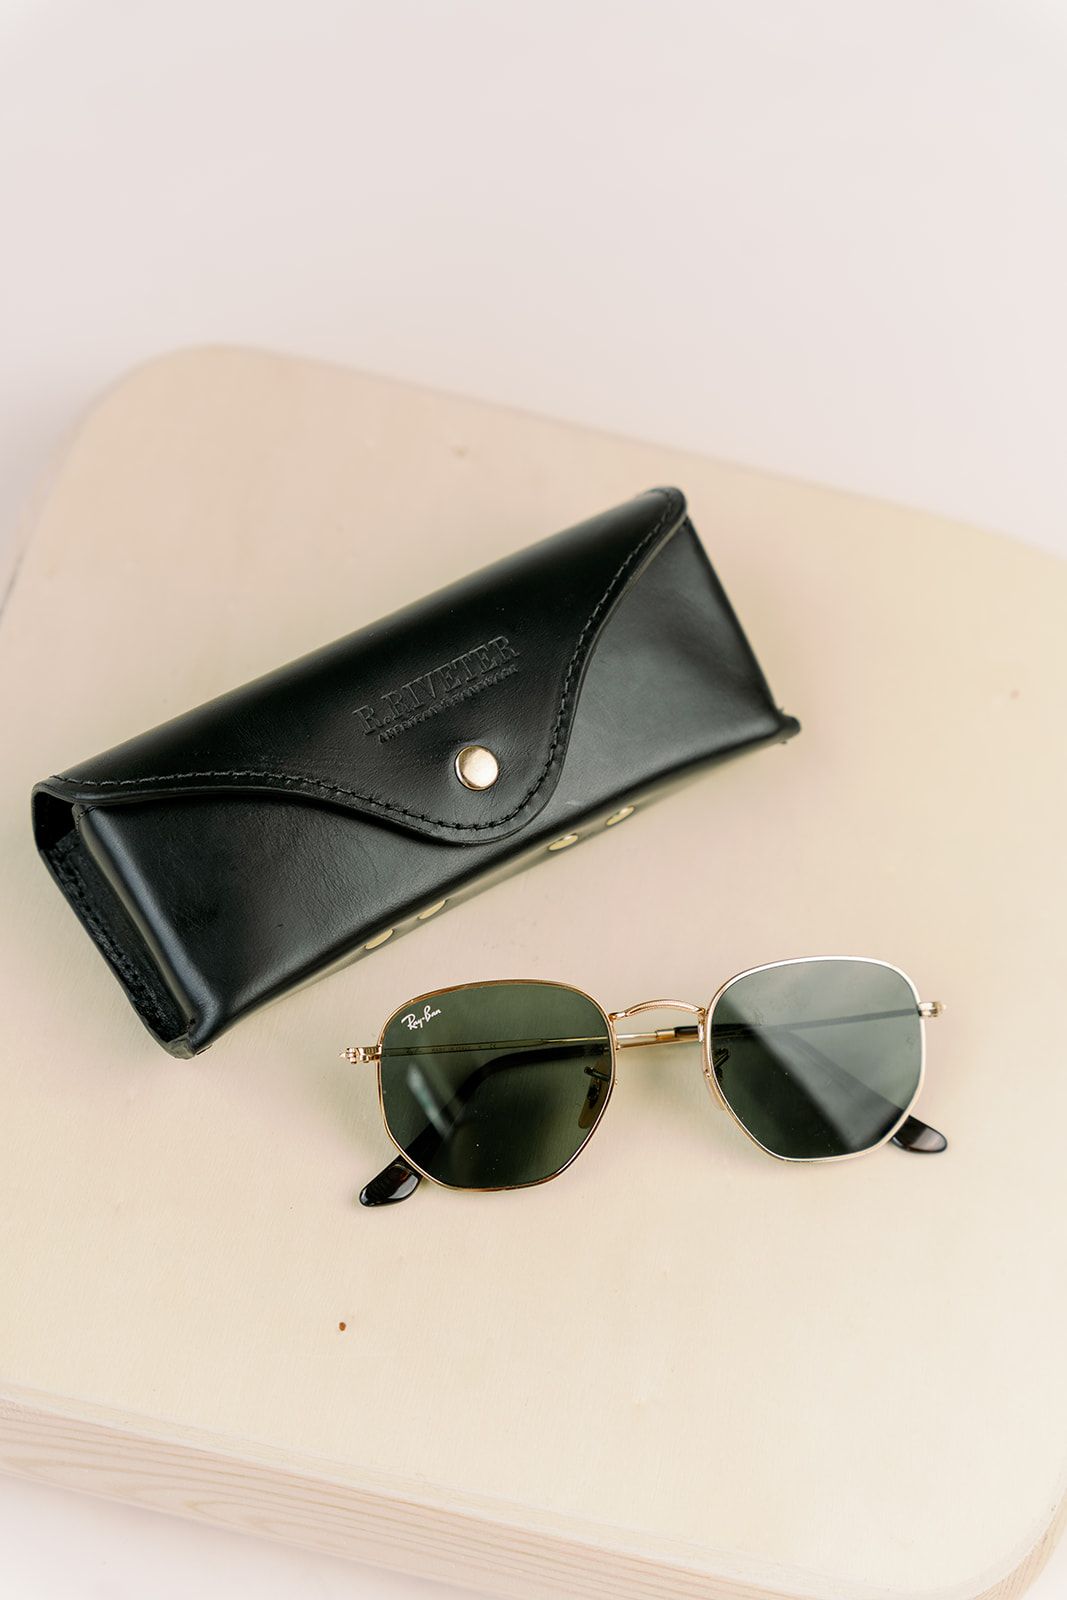 Sunglasses Case | Signature Black Leather